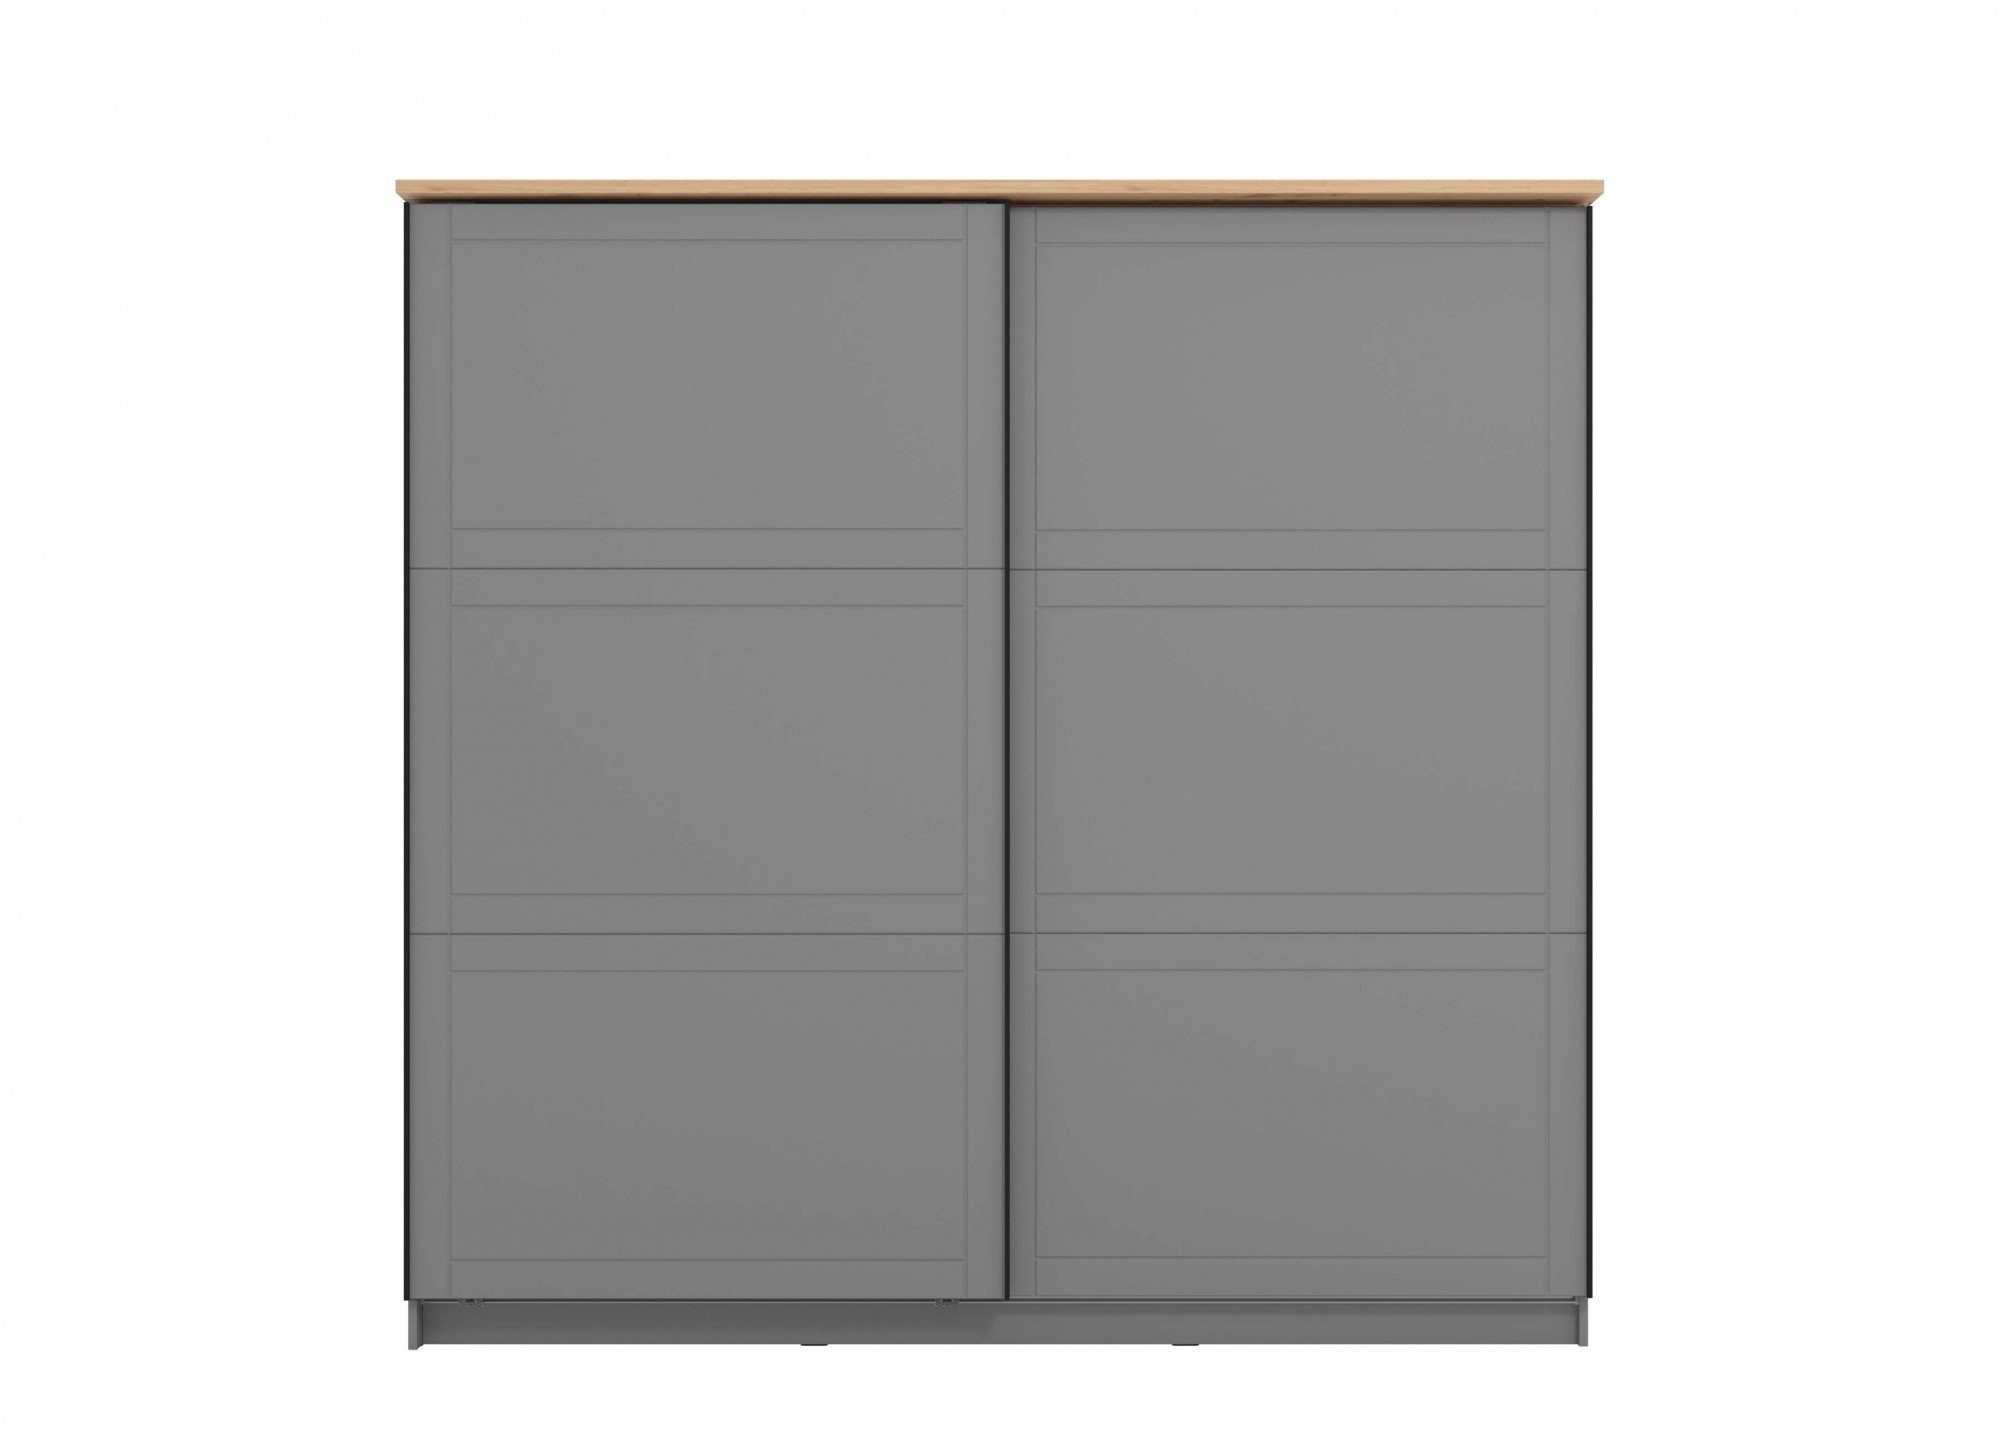 Home affaire Schwebetürenschrank Valencia INKLUSIVE komplette Innenausstattung, 220cm breit Grau matt | Graphite grau